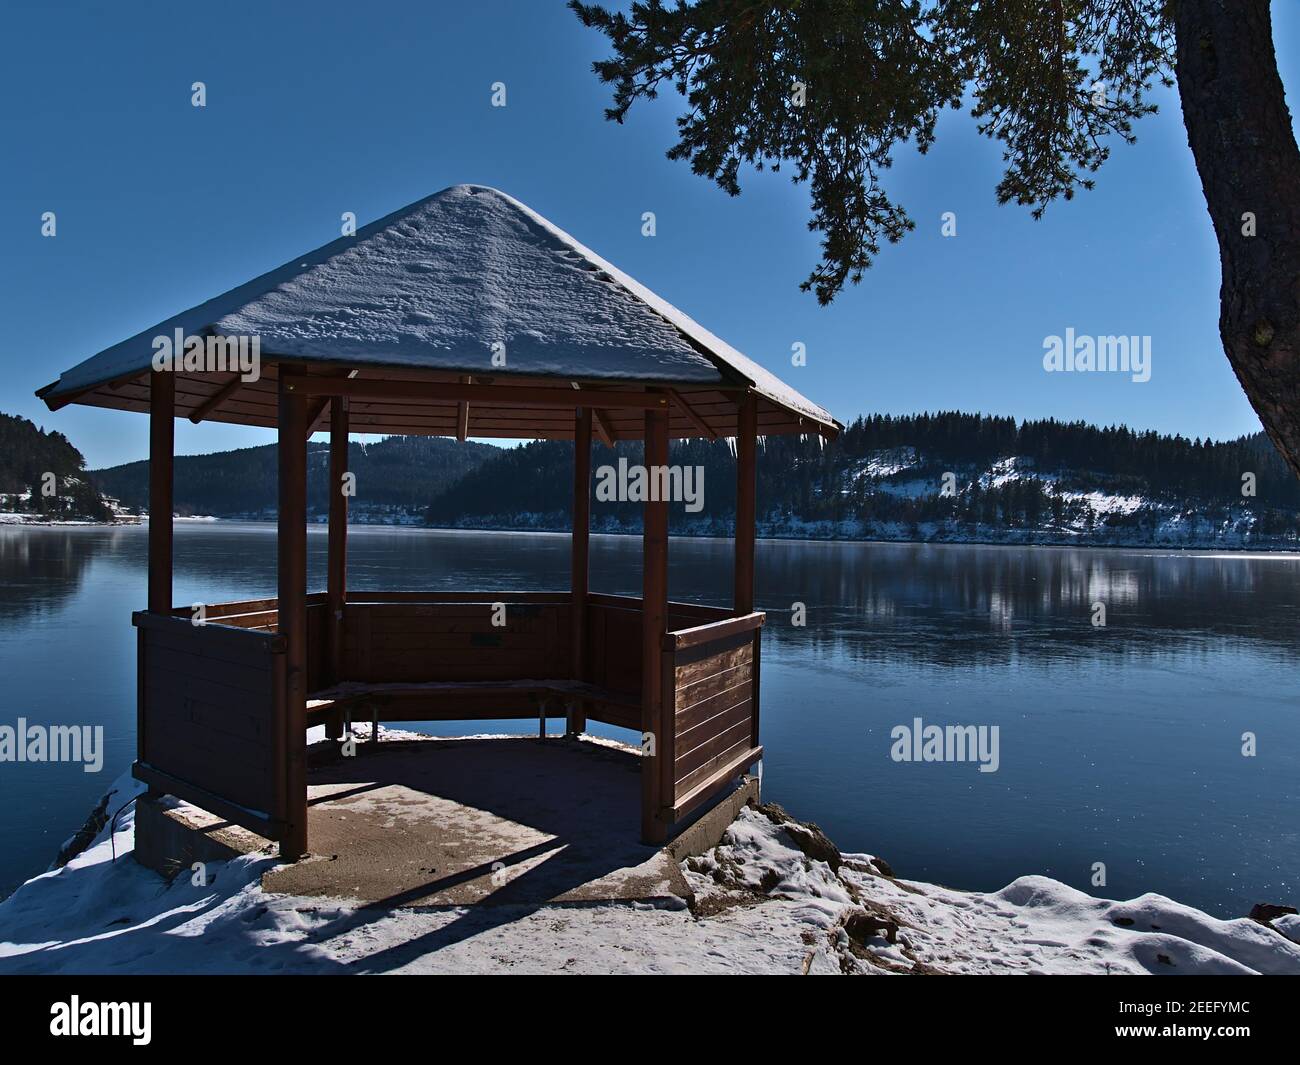 pavillon in legno innevato sulla riva del lago di Frozen Schluchsee, una meta turistica popolare nella catena montuosa della Foresta Nera, in Germania, in inverno. Foto Stock